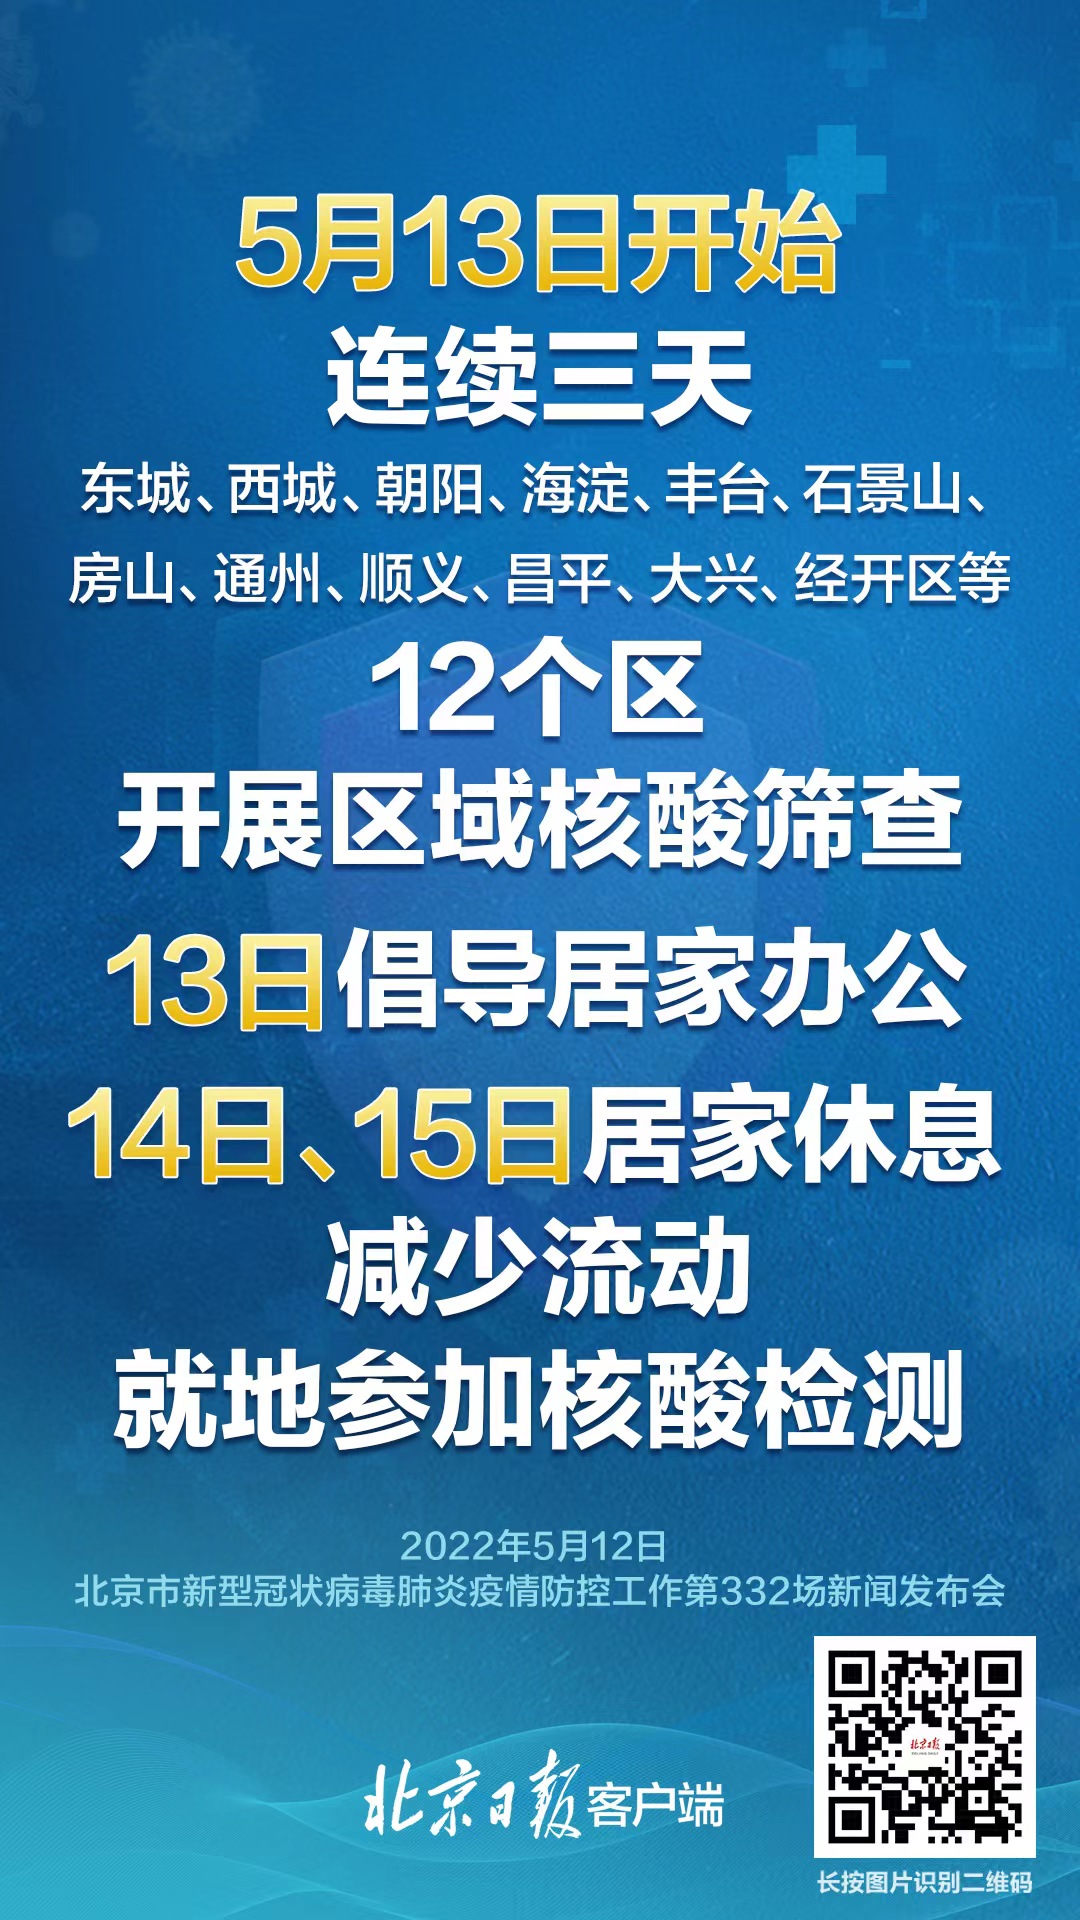 北京:各单位要督促所属人员积极参加核酸筛查，做好居家办公安排